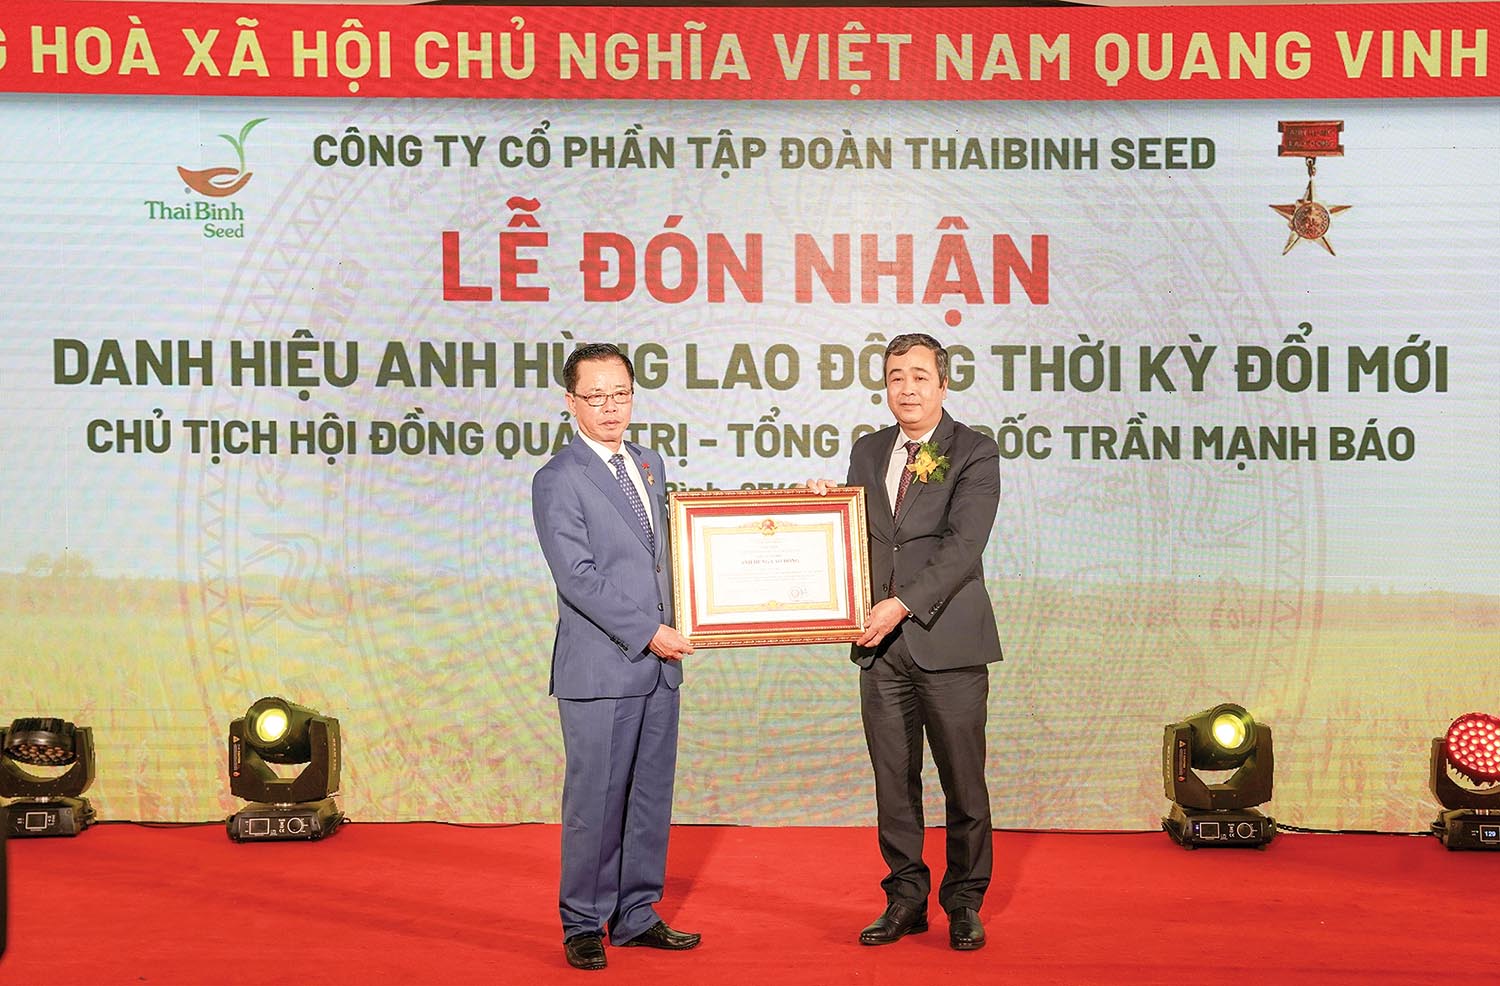 Ông Trần Mạnh Báo, Chủ tịch HĐQT, Tổng giám đốc Tập đoàn ThaiBinh Seed: Đồng hành không nghỉ cùng “người nông dân mới” - ảnh 1